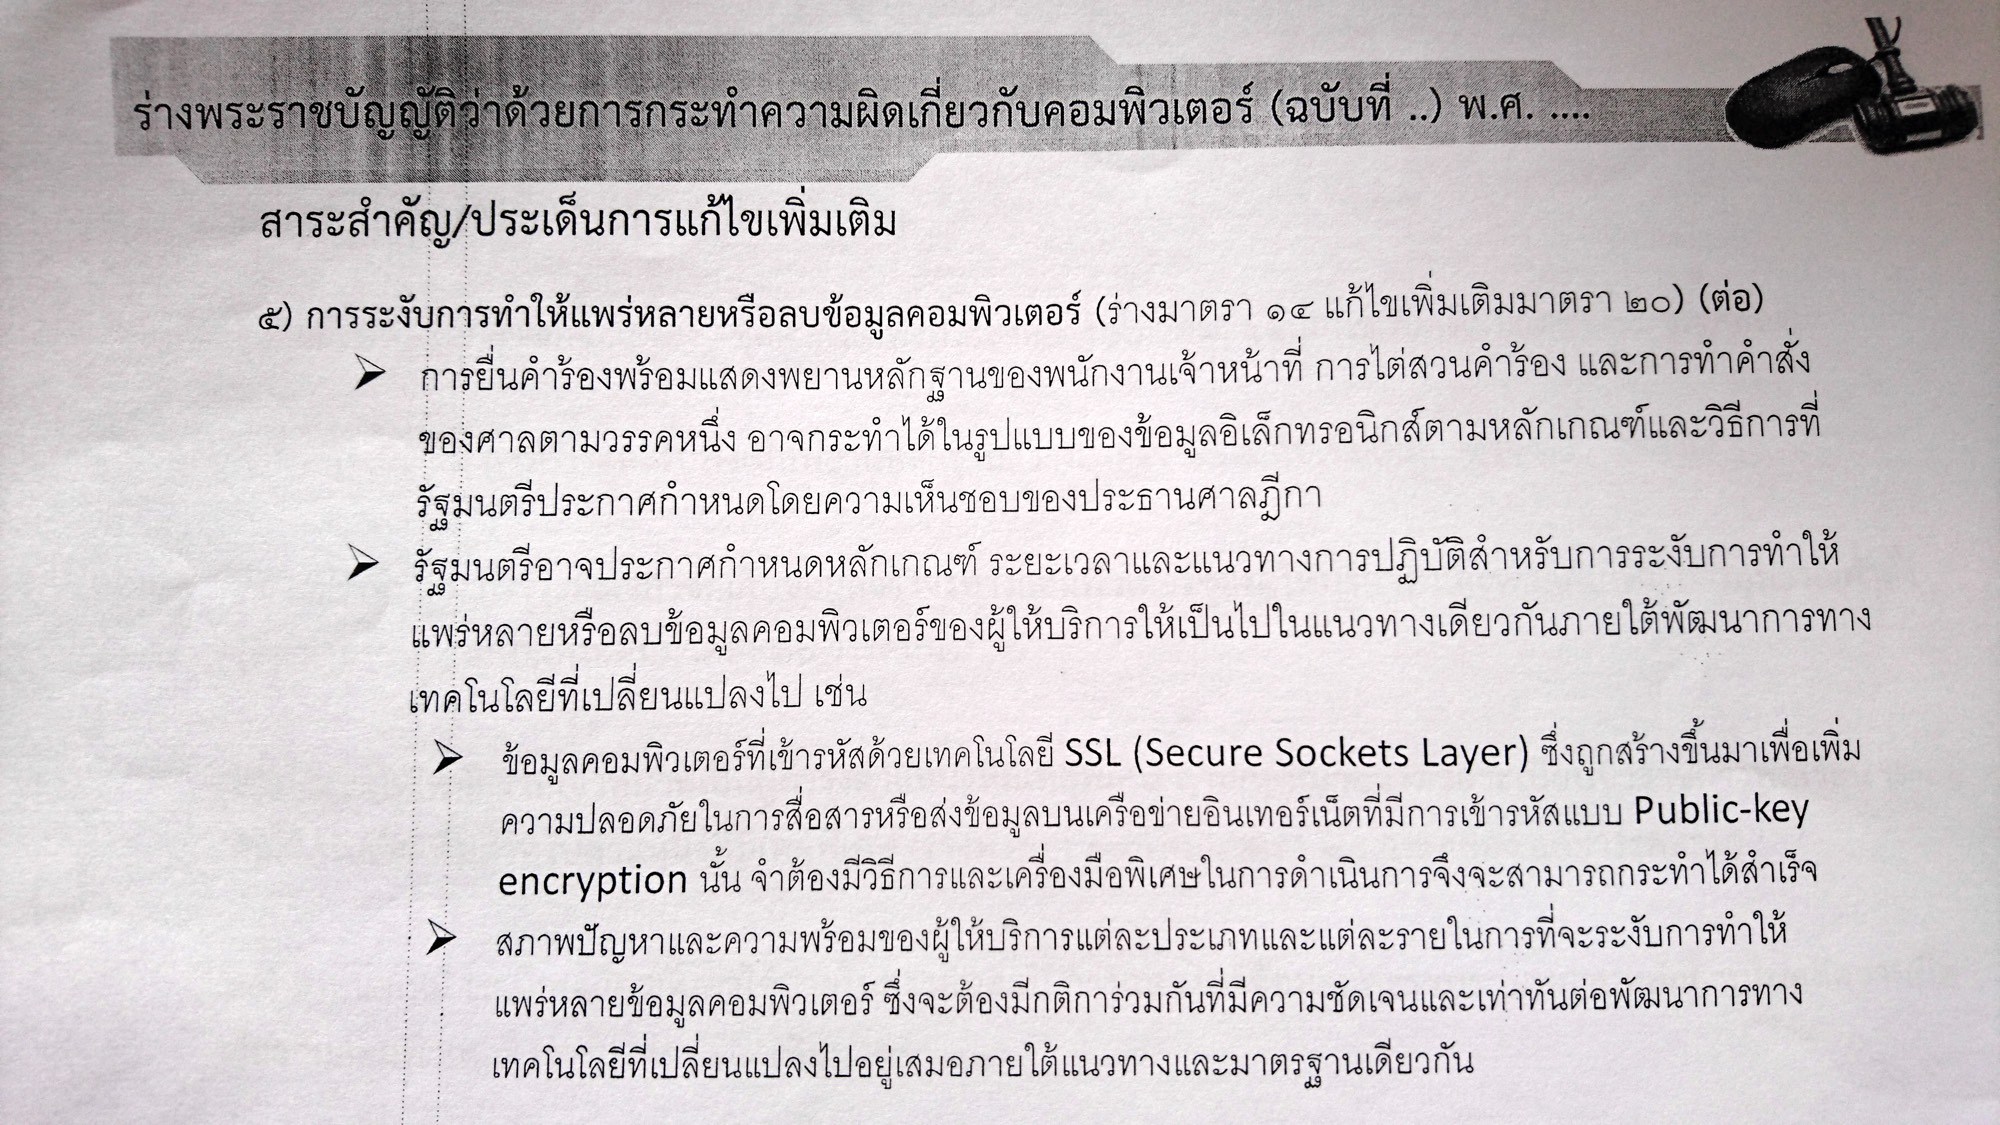 เอกสารจากกระทรวงไอซีที บรรยายเหตุผลในการเข้าถึงข้อมูลที่ถูกเข้ารหัส ที่มาภาพ: https://thainetizen.org/2016/05/single-gateway-back-ssl-censorship/